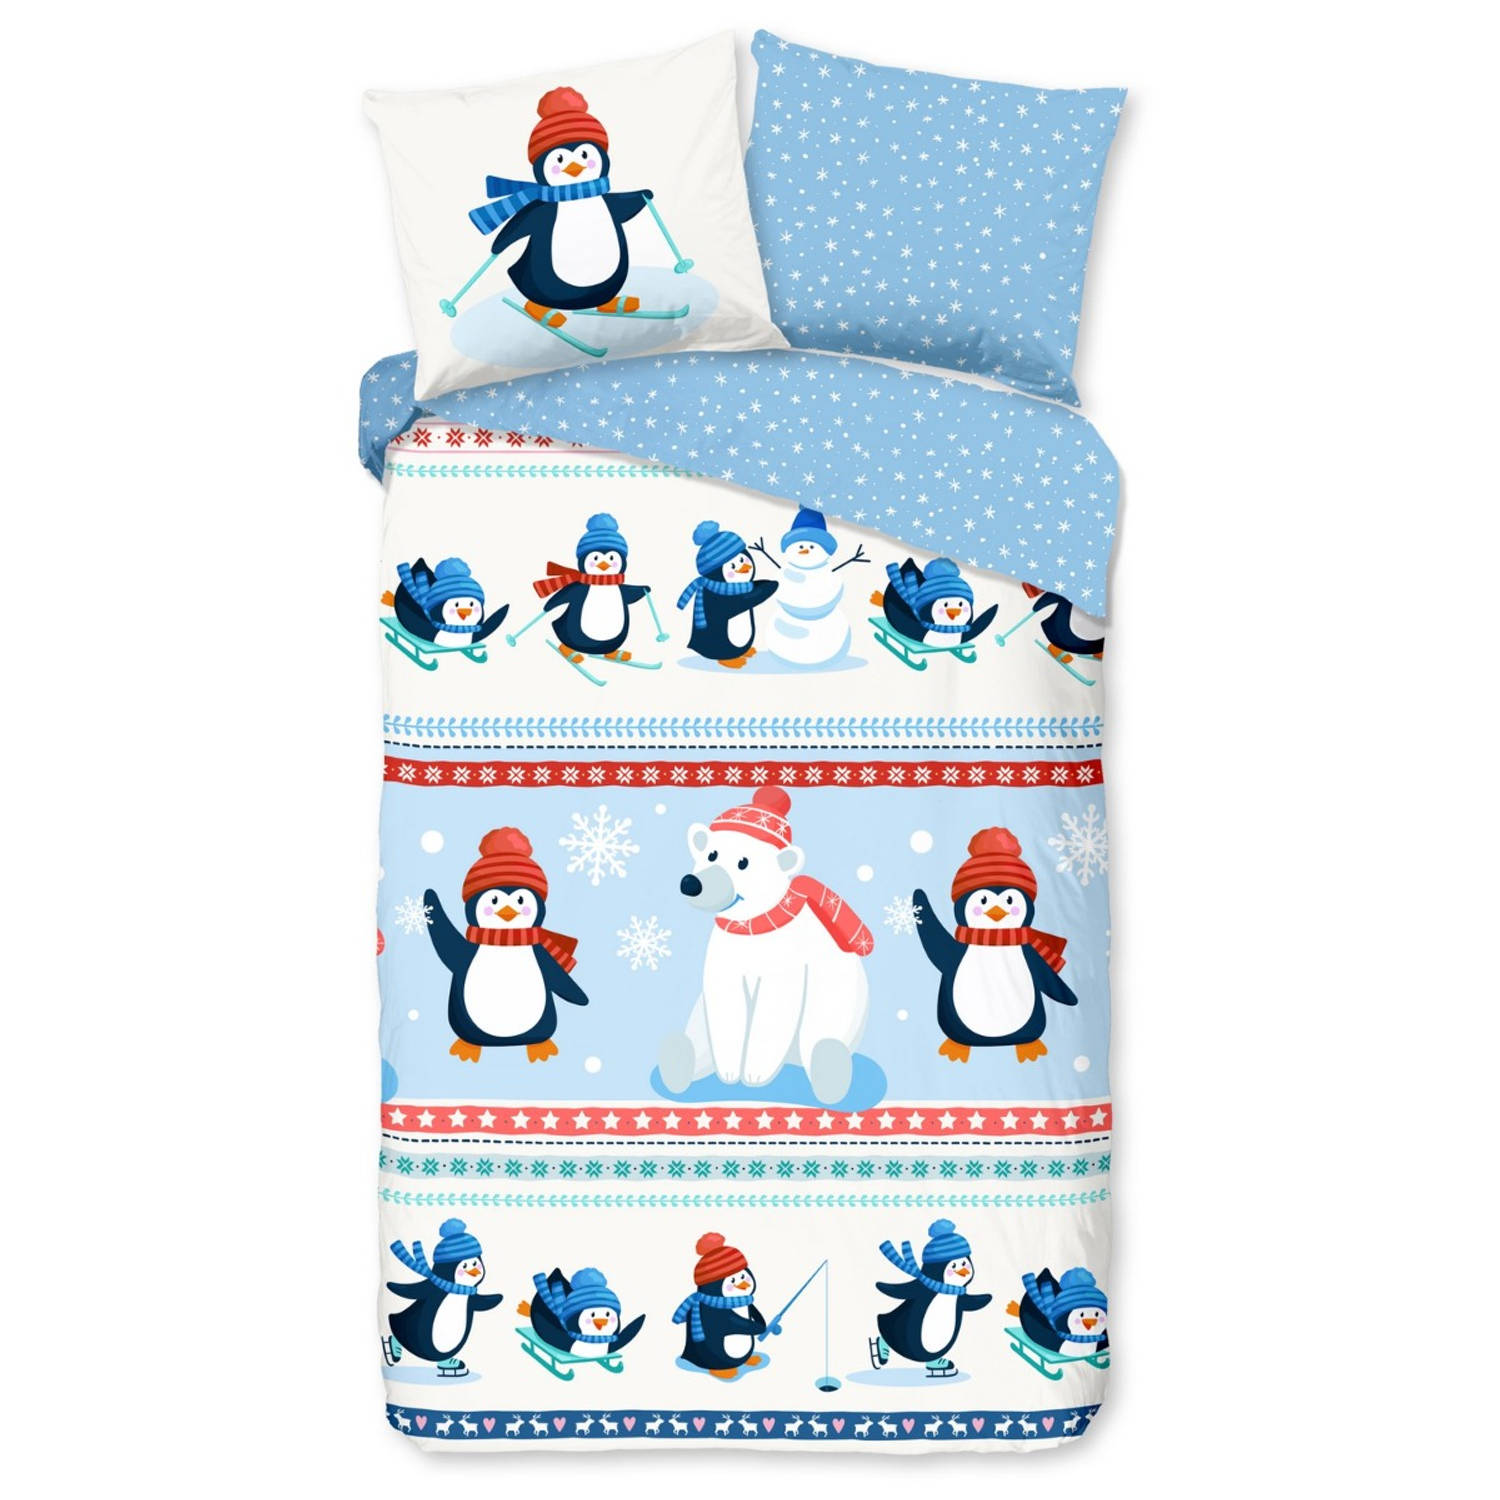 Good Morning Dekbedovertrek Penguins 140 x 200|220 cm + 1 kussen